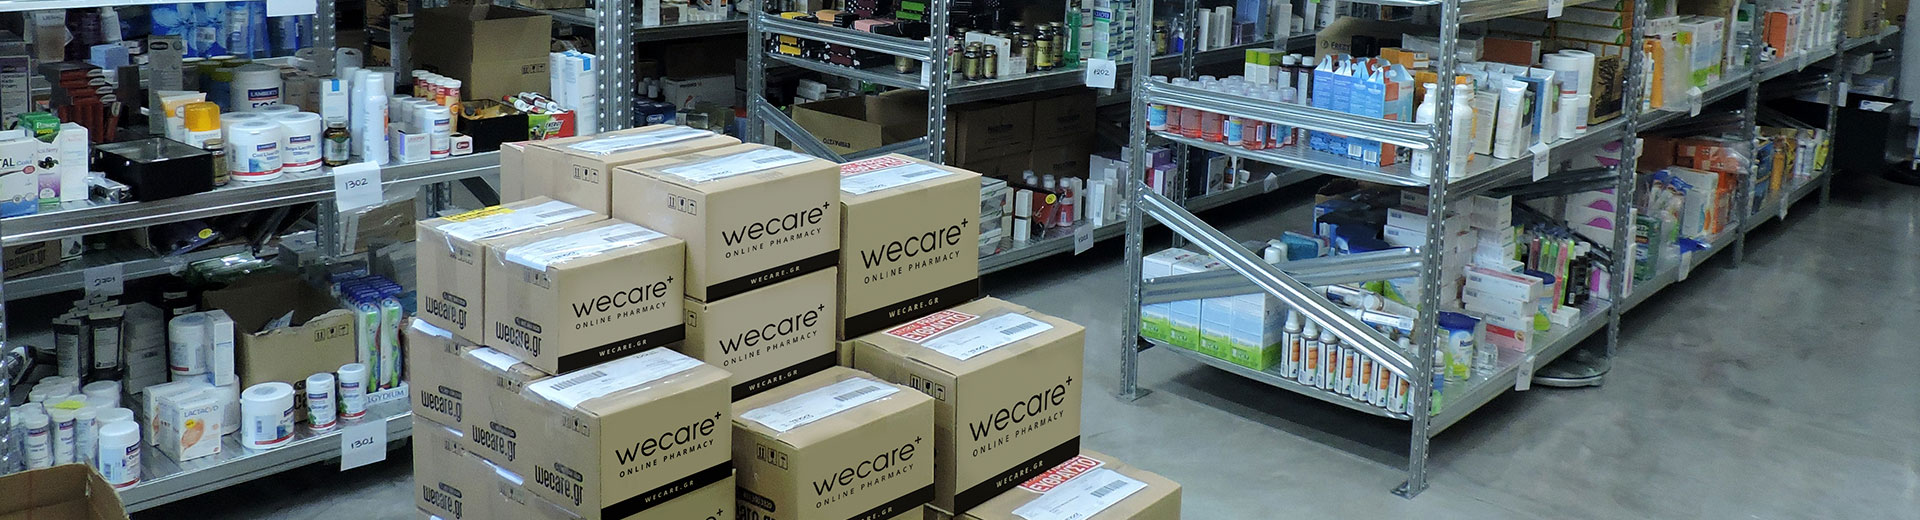 Wecare - Υψηλές προδιαγραφές φύλαξης & συντήρησης προϊόντων